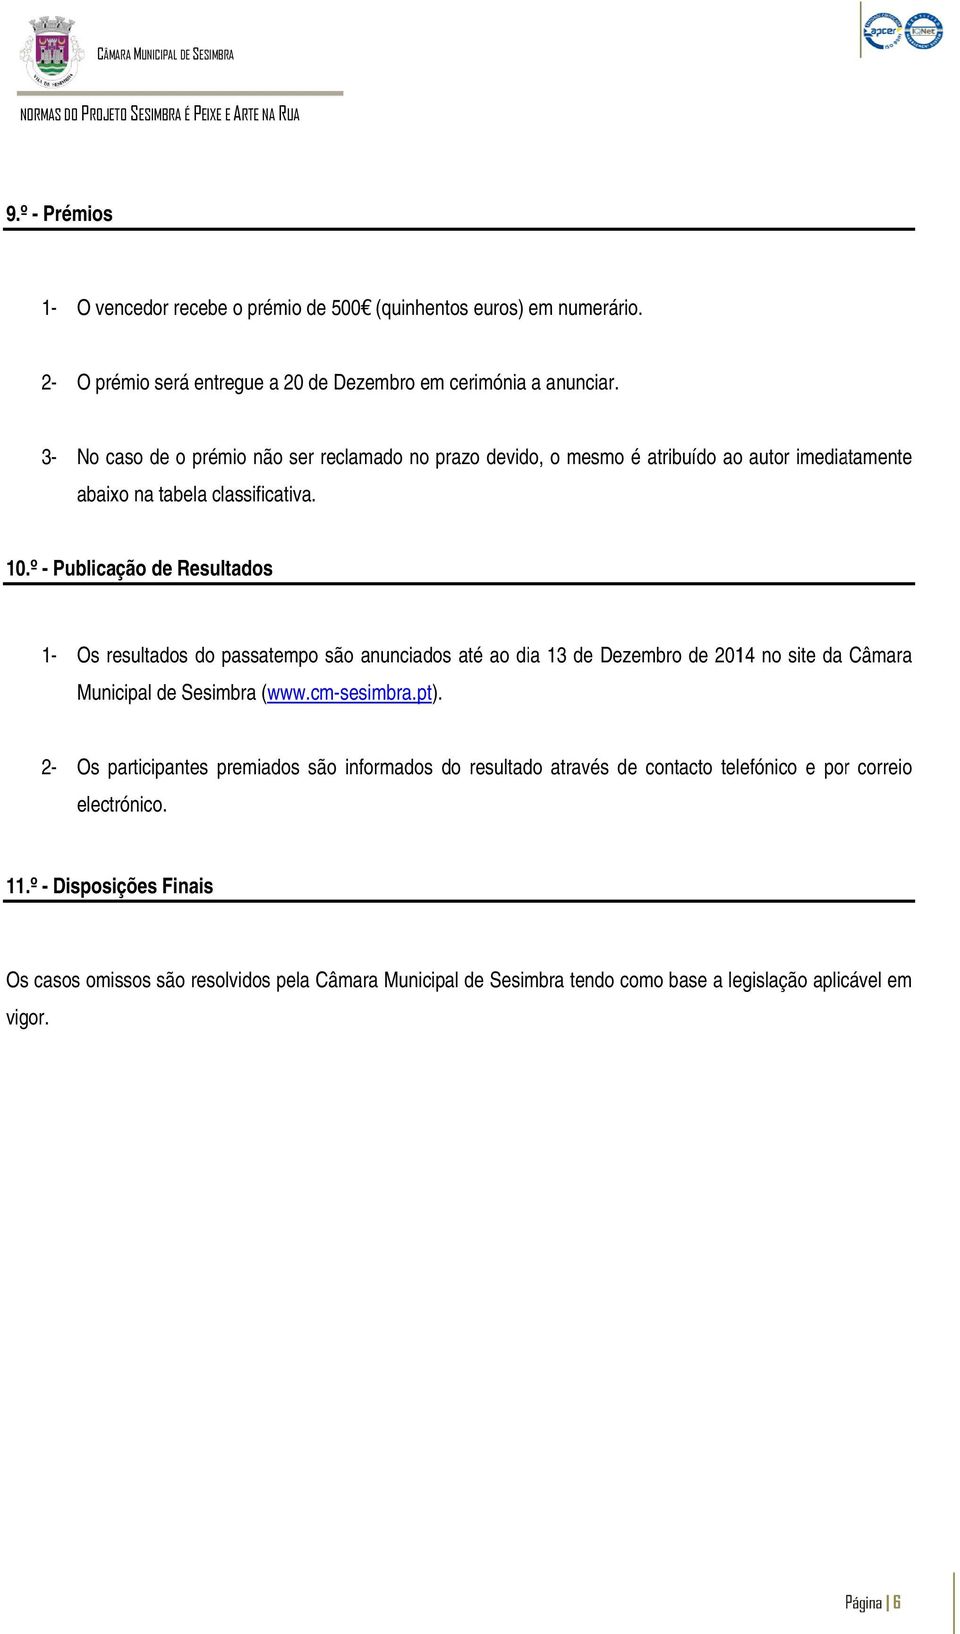 º - Publicação de Resultados 1- Os resultados do passatempo são anunciados até ao dia 13 de Dezembro de 2014 no site da Câmara Municipal de Sesimbra (www.cm-sesimbra.pt).